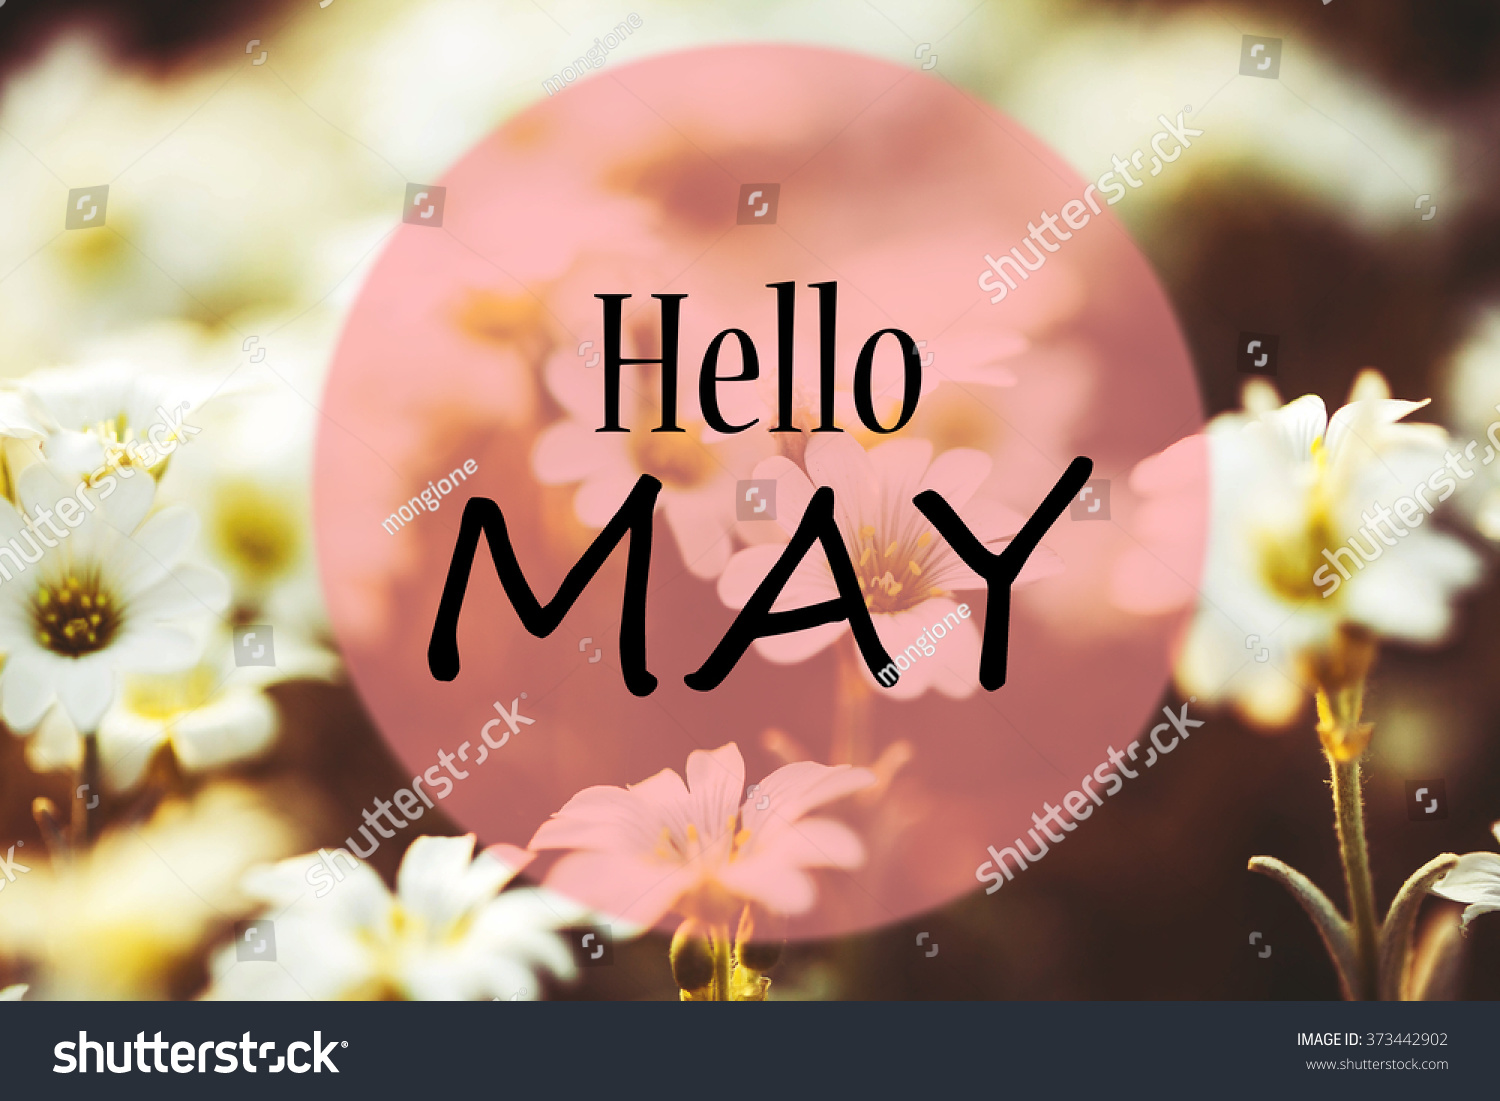 Hello may. Spring #373442902